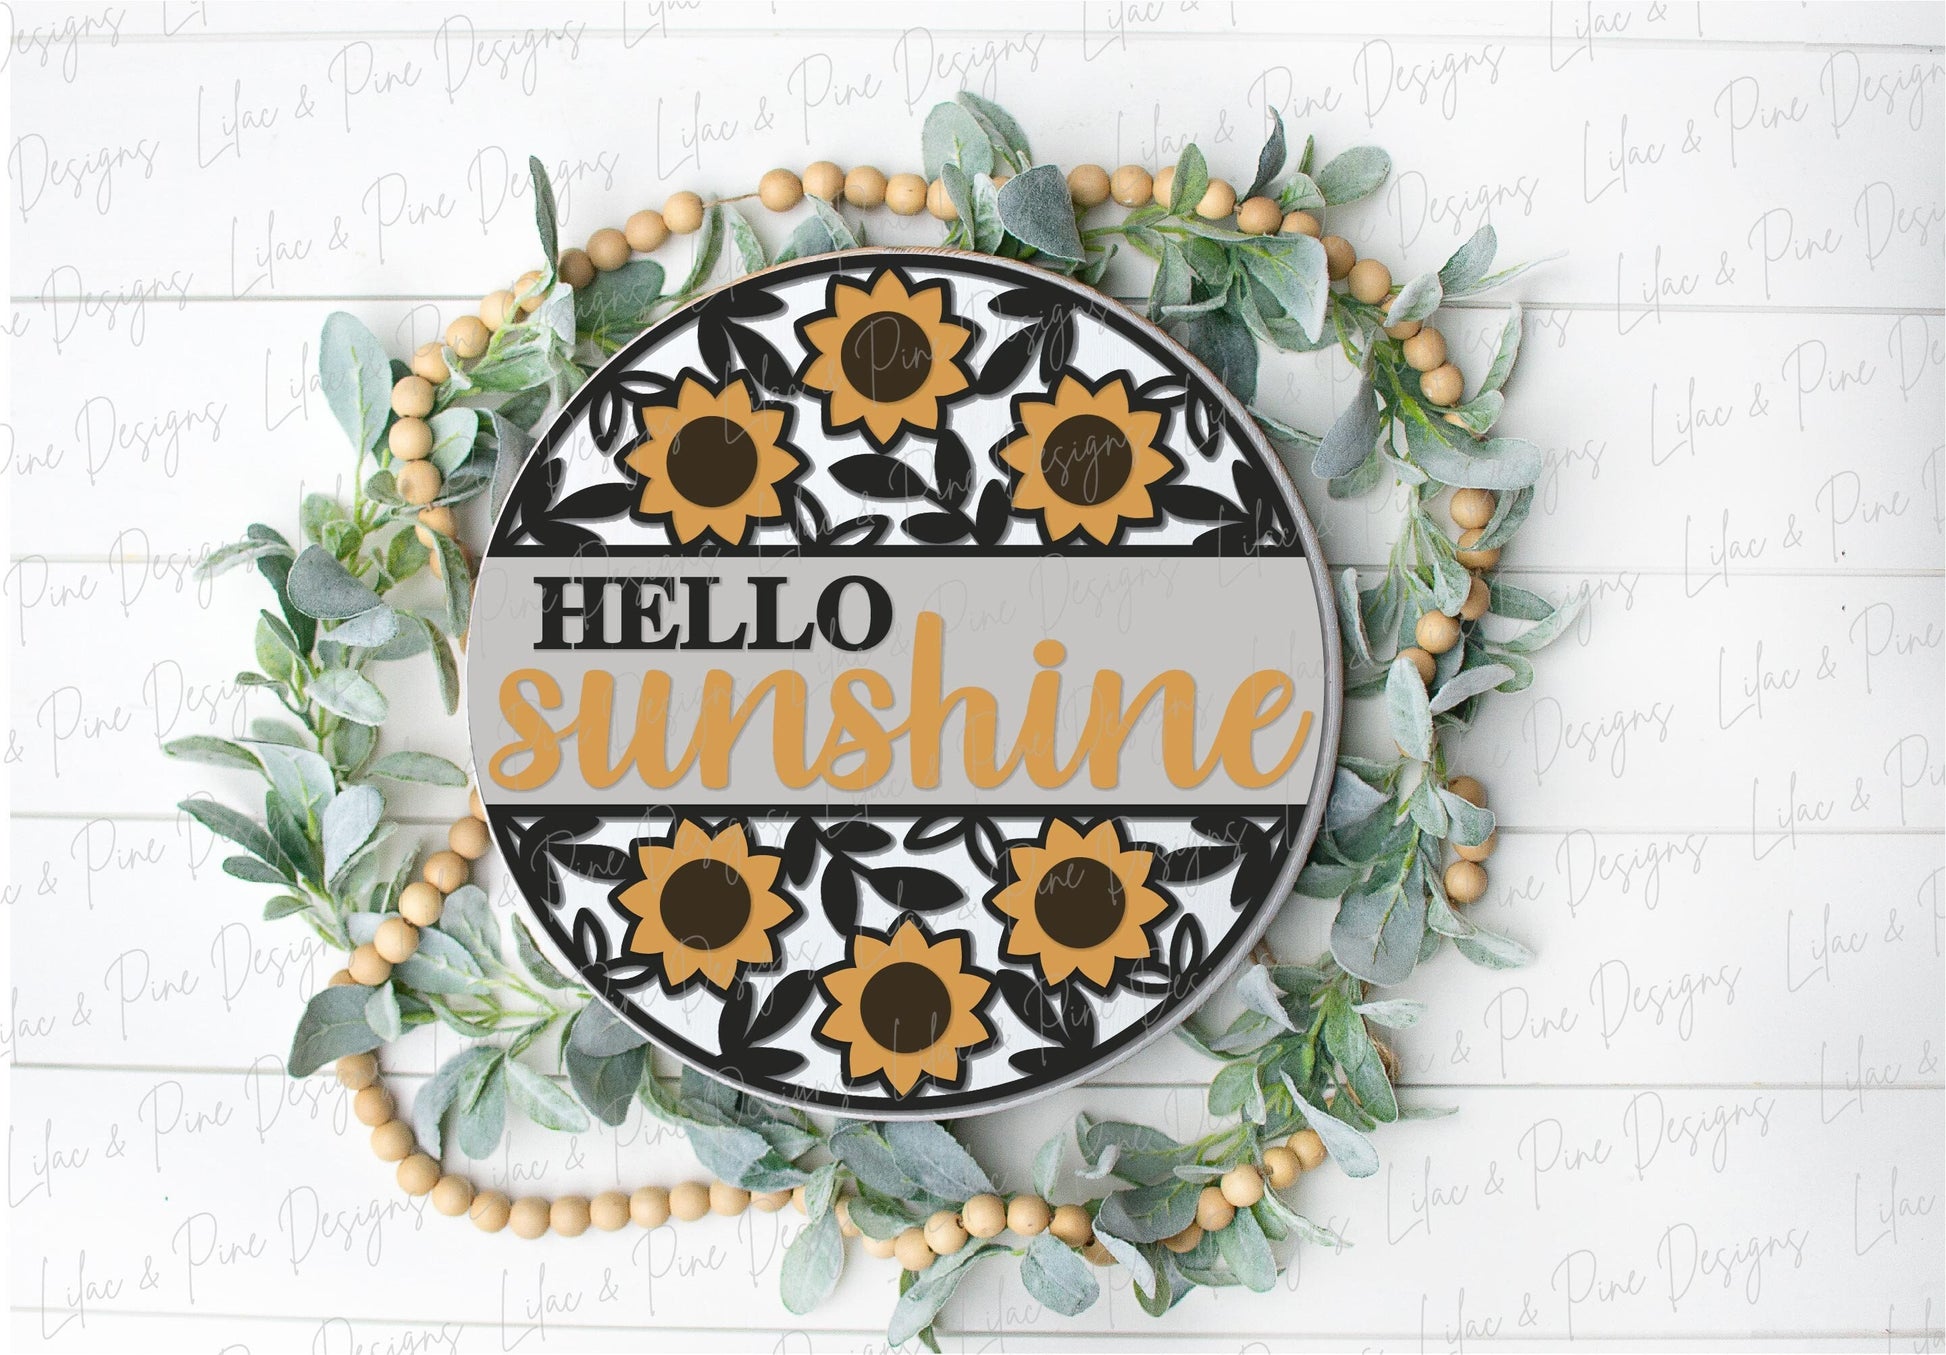 Sunflower door hanger SVG, Floral welcome sign, hello sunshine door hanger SVG, fall floral welcome sign, Glowforge SVG, laser cut file